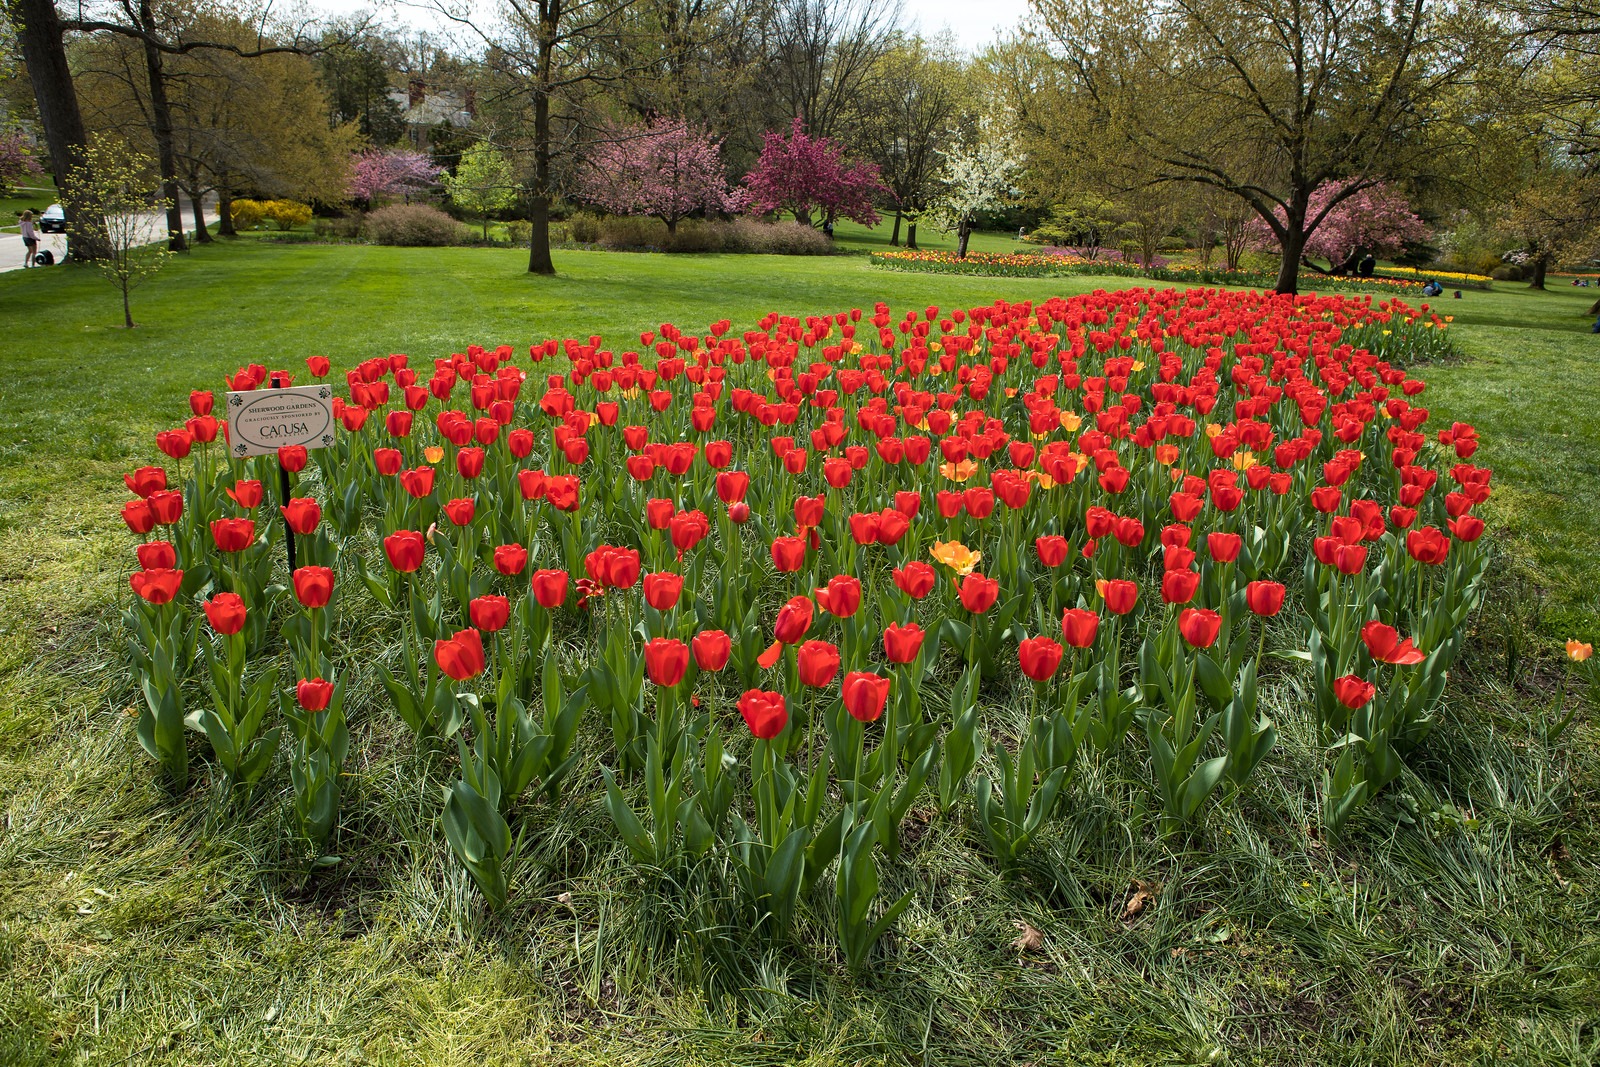 Tulips in Spring in Sherwood Gardens